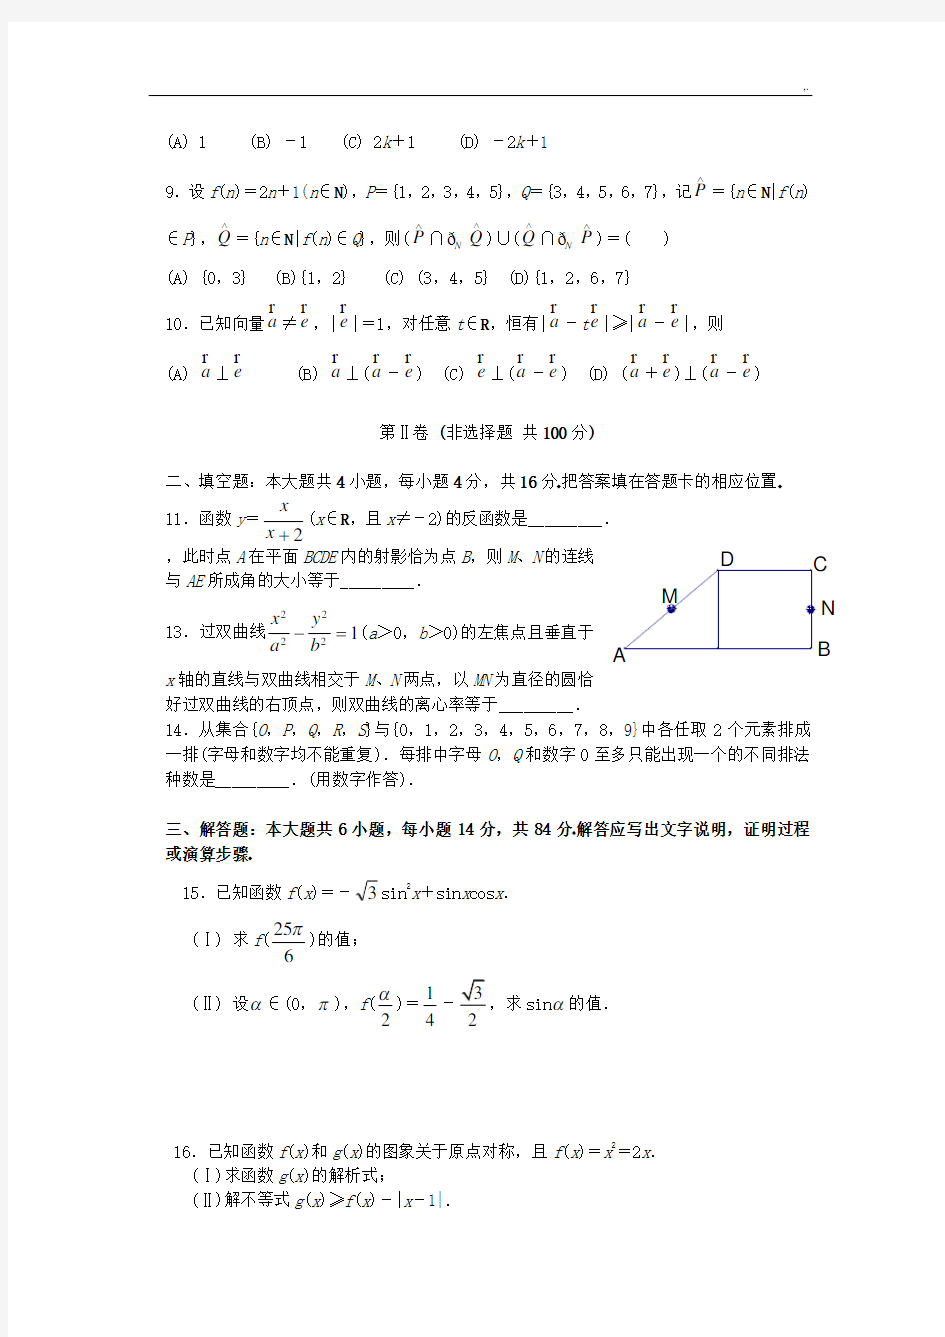 2005年高考理科数学(浙江卷)试题及标准答案